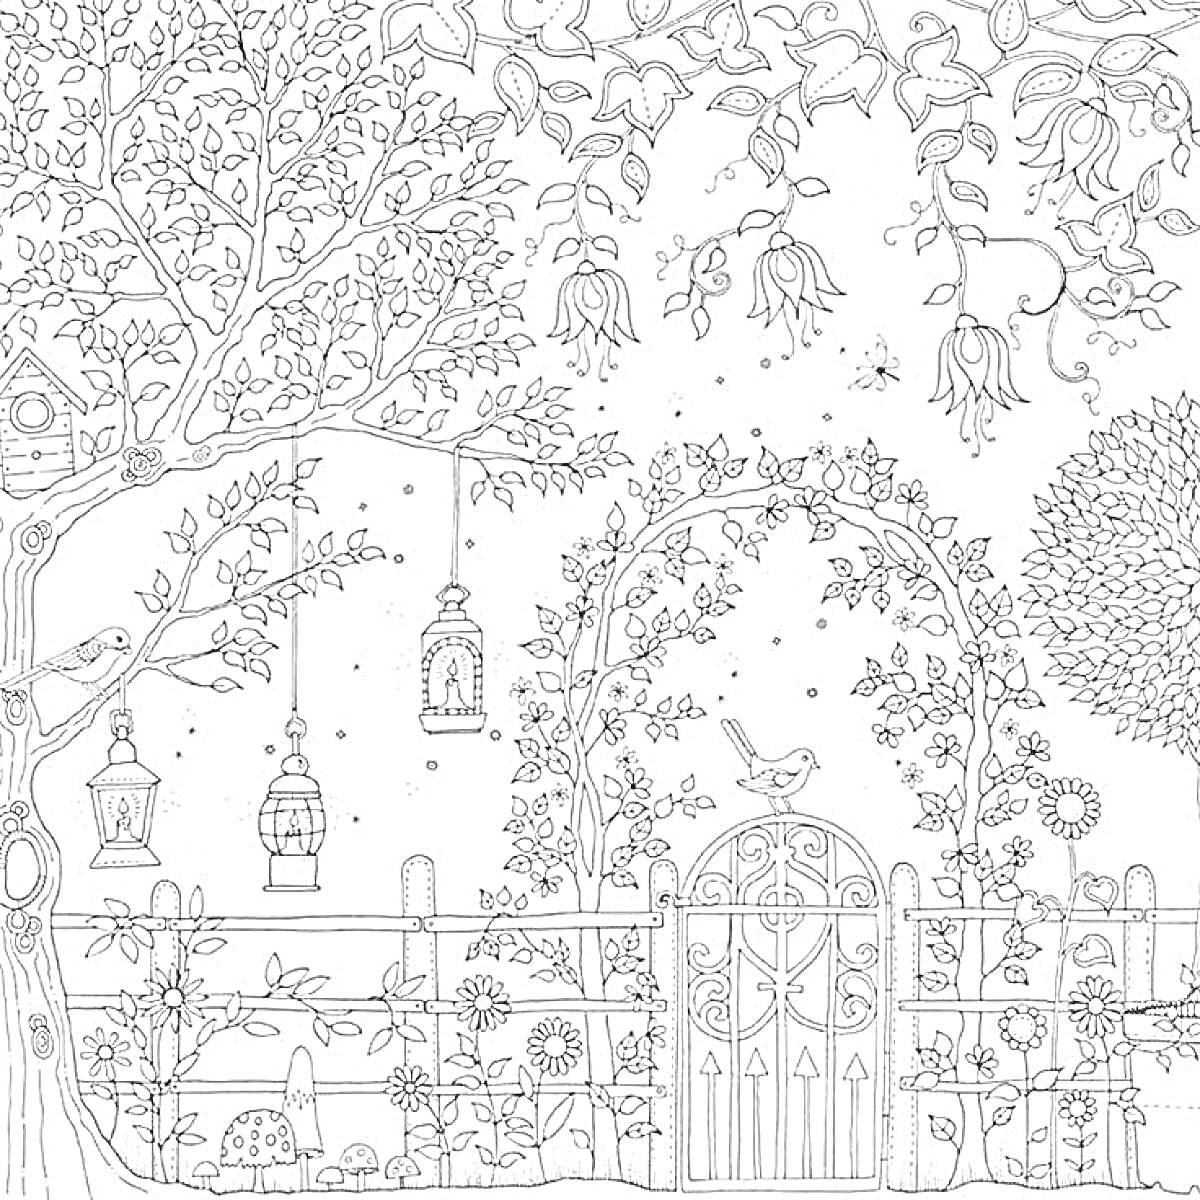 Раскраска Ворота в саду с цветущими деревьями, птичьими клетками и фонарями